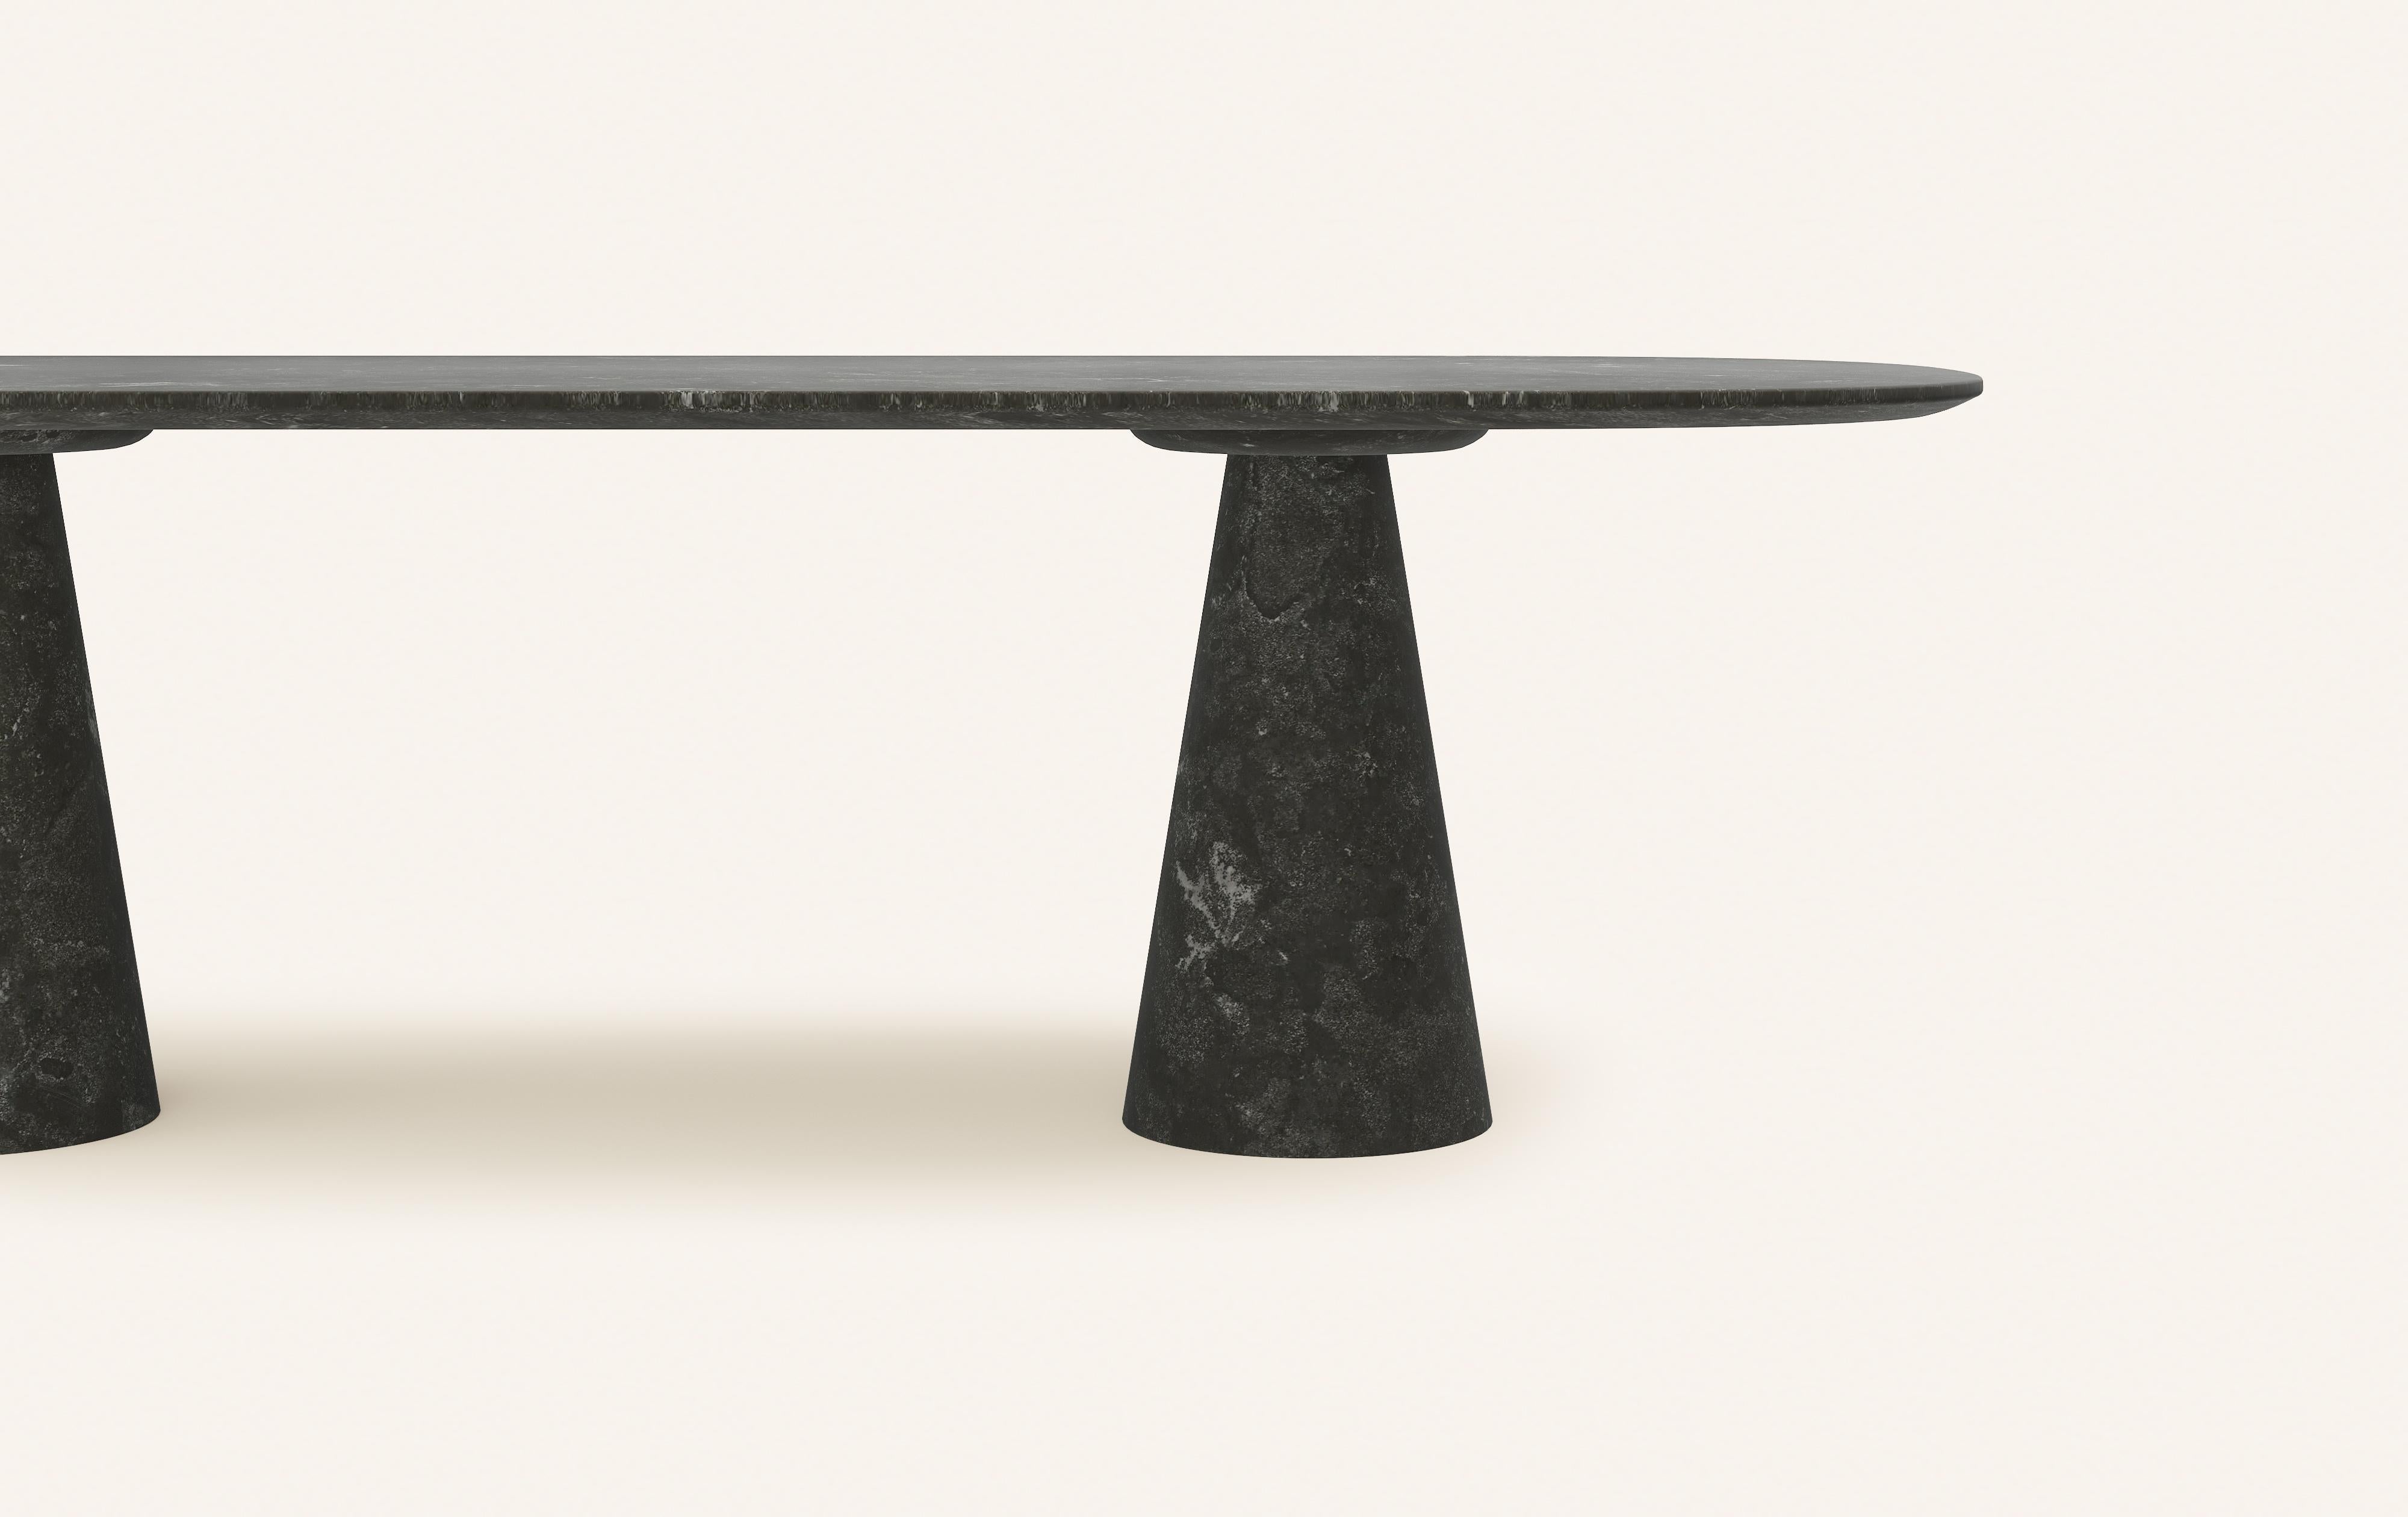 American FORM(LA) Cono Oval Dining Table 96”L x 42”W x 30”H Nero Petite Granite For Sale